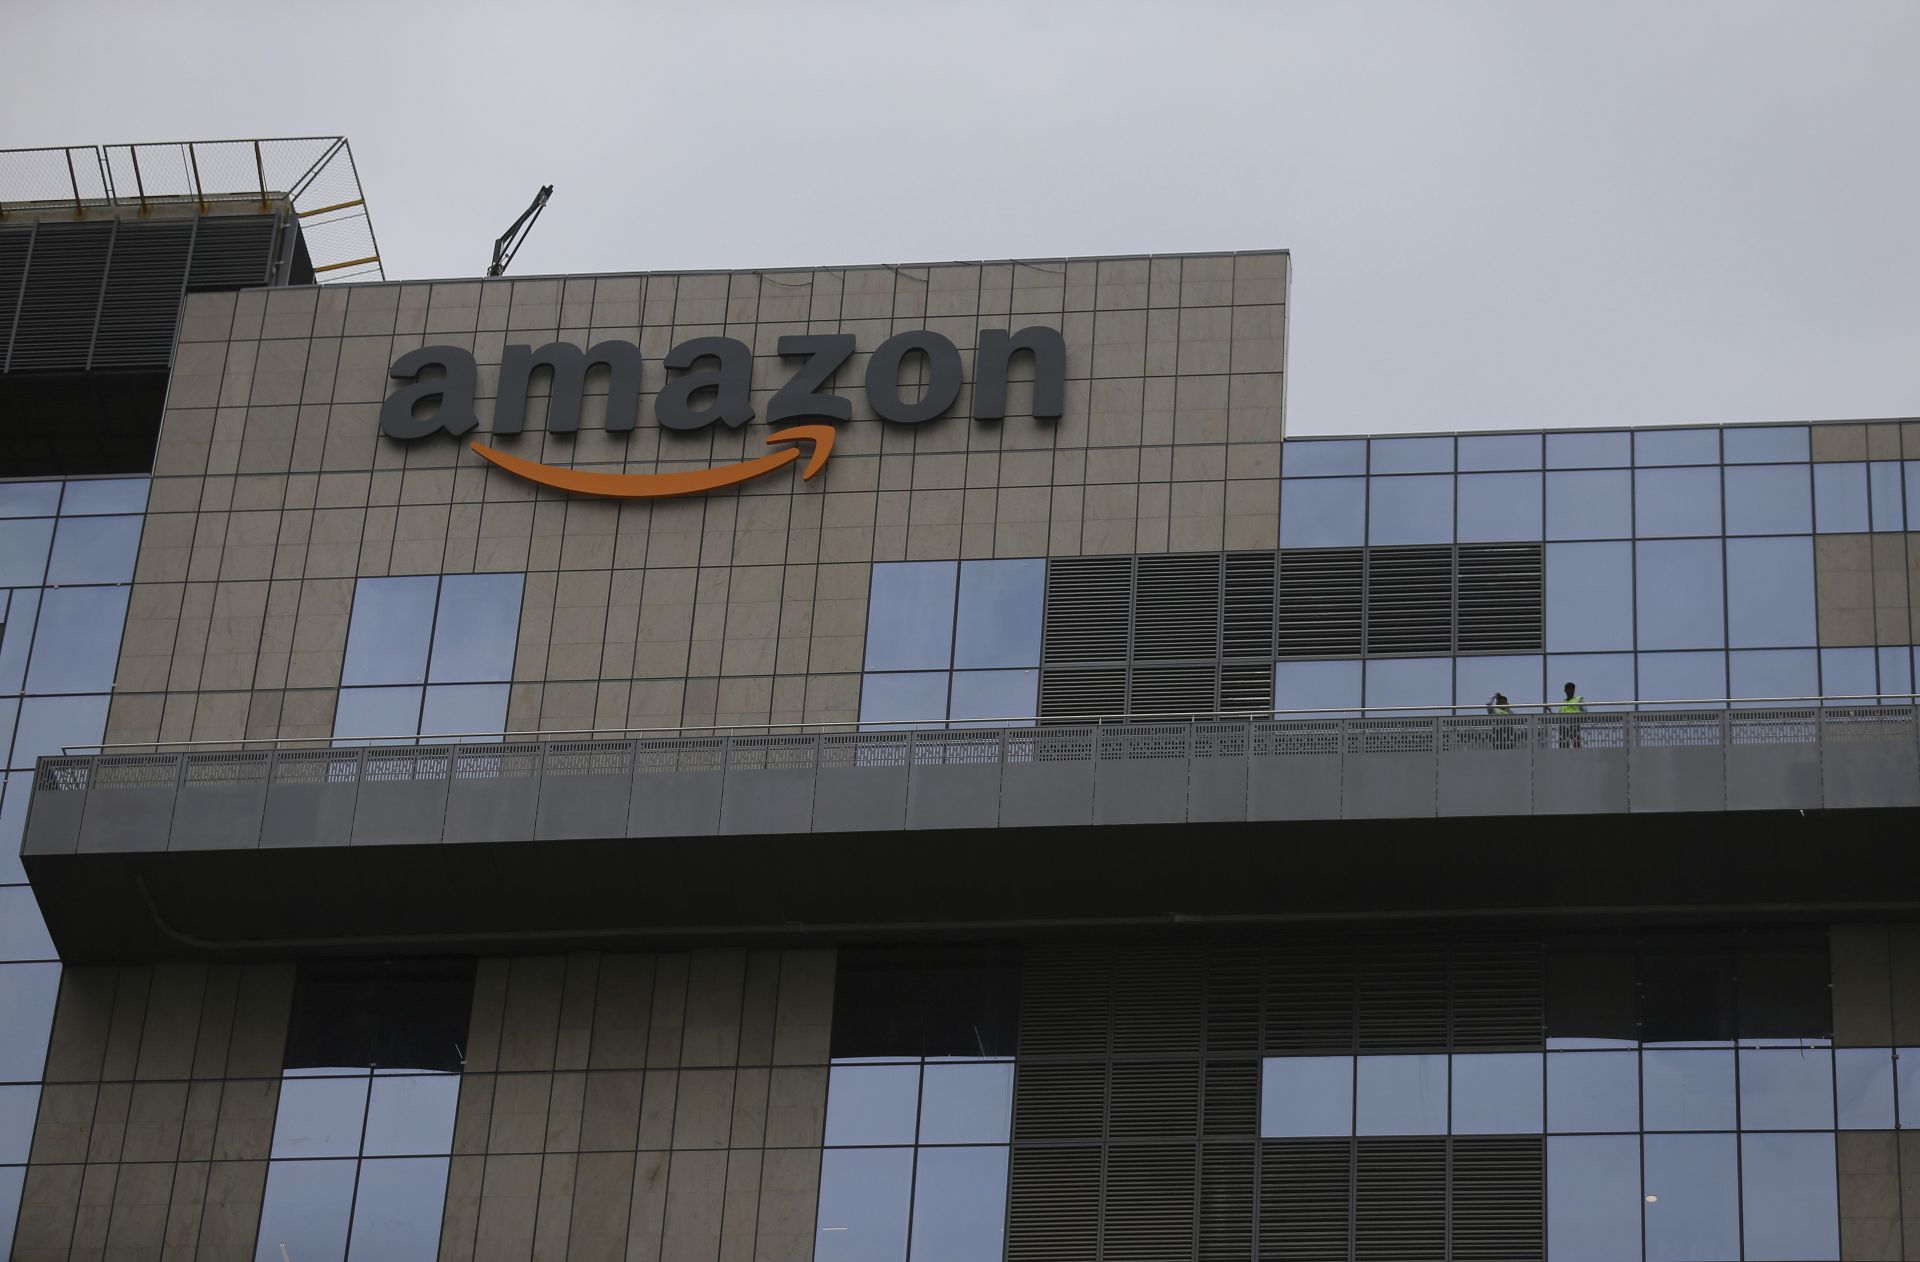 Федералната комисия по търговия на САЩ започва да разследва бизнеса с "облачни услуги" на Amazon.com Inc